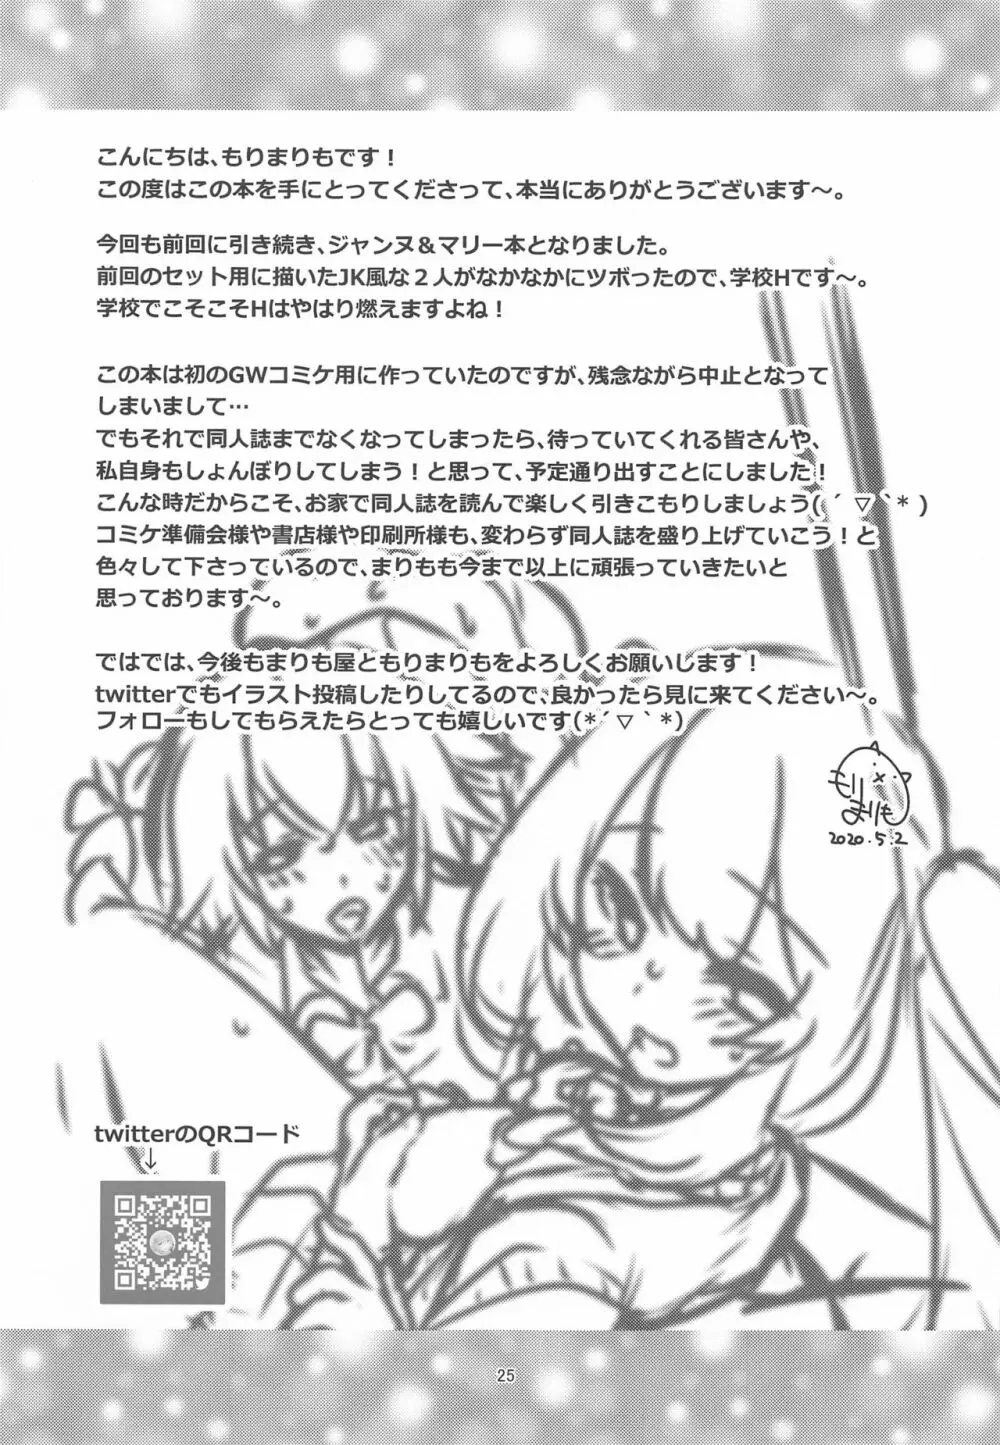 CHALDEA GIRLS COLLECTION ジャンヌ＆マリー制服Hしまくる本 24ページ